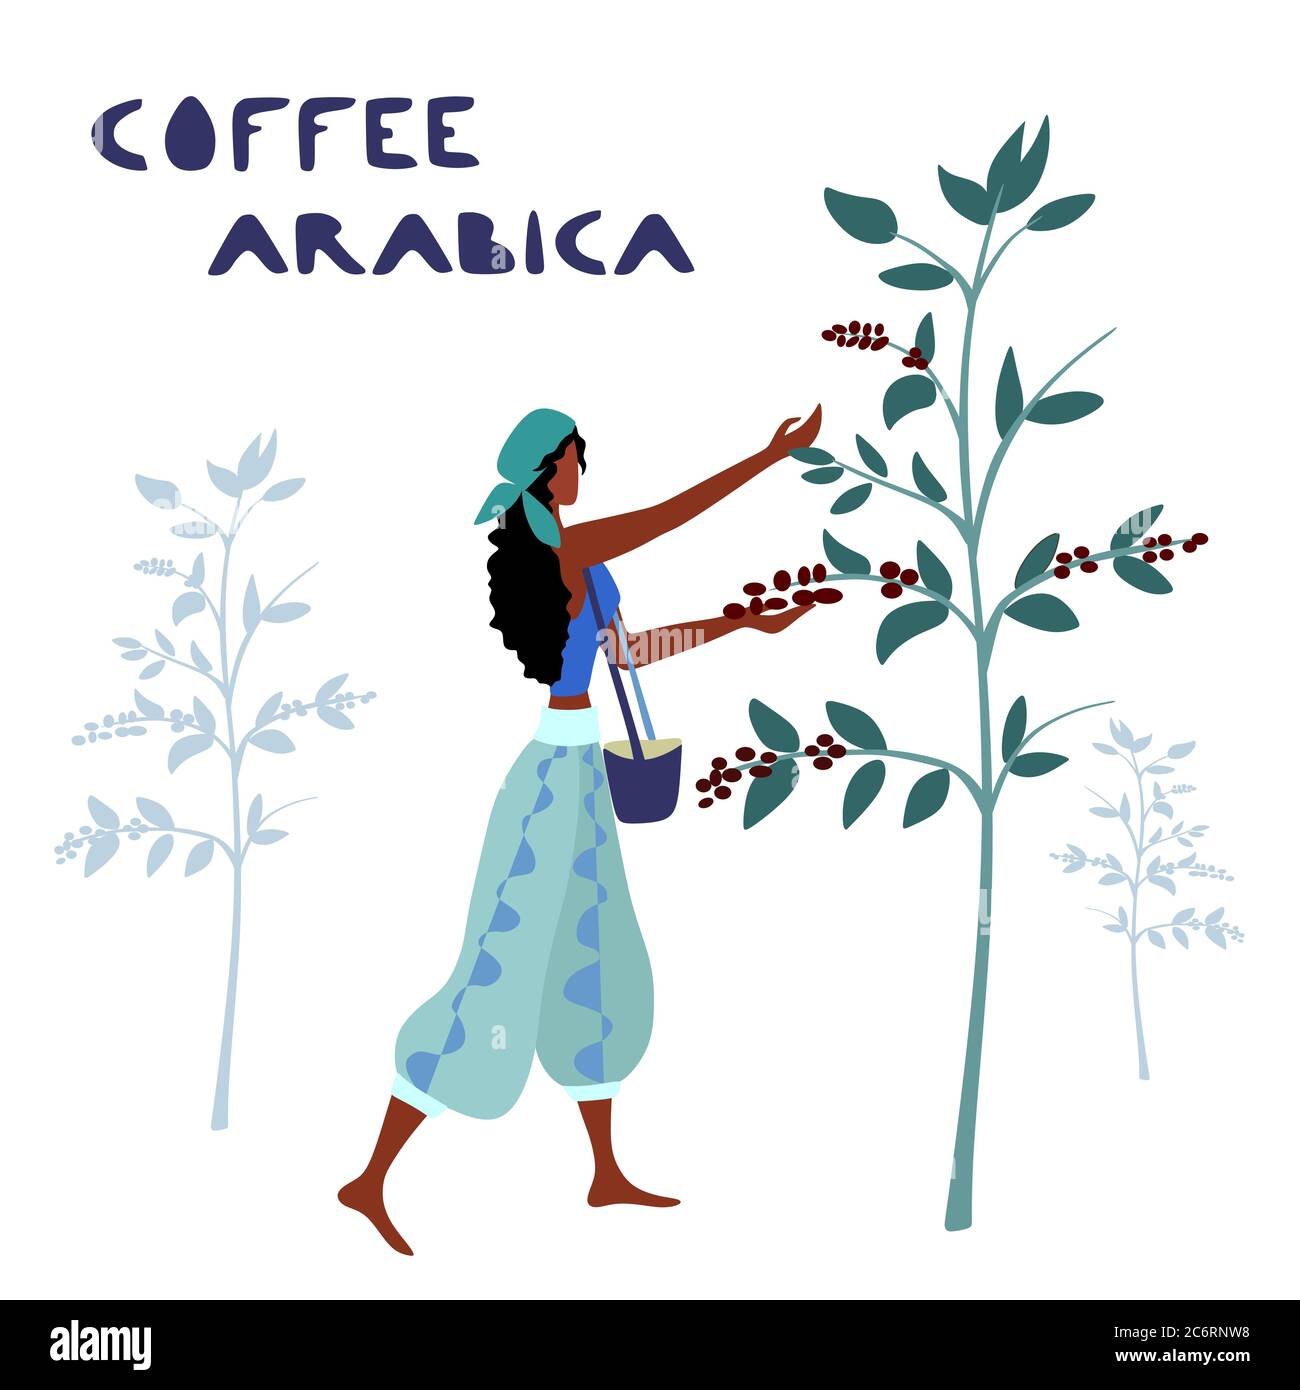 Une femme non identifiée cultivateur de café récolte des baies de café dans la ferme de café Illustration de Vecteur